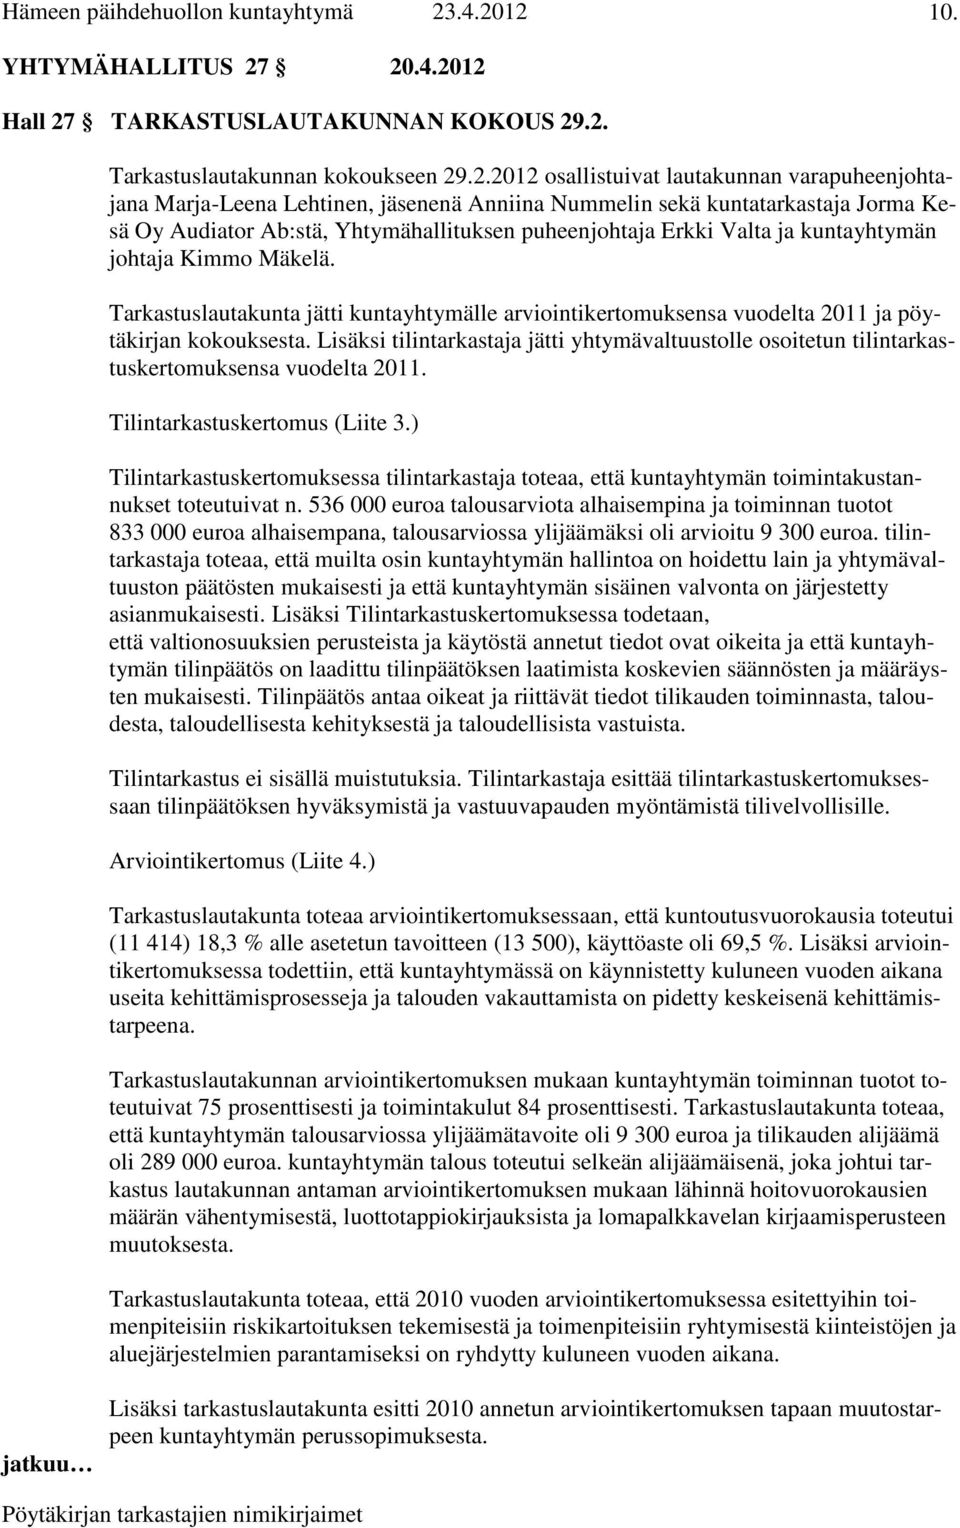 kuntatarkastaja Jorma Kesä Oy Audiator Ab:stä, Yhtymähallituksen puheenjohtaja Erkki Valta ja kuntayhtymän johtaja Kimmo Mäkelä.